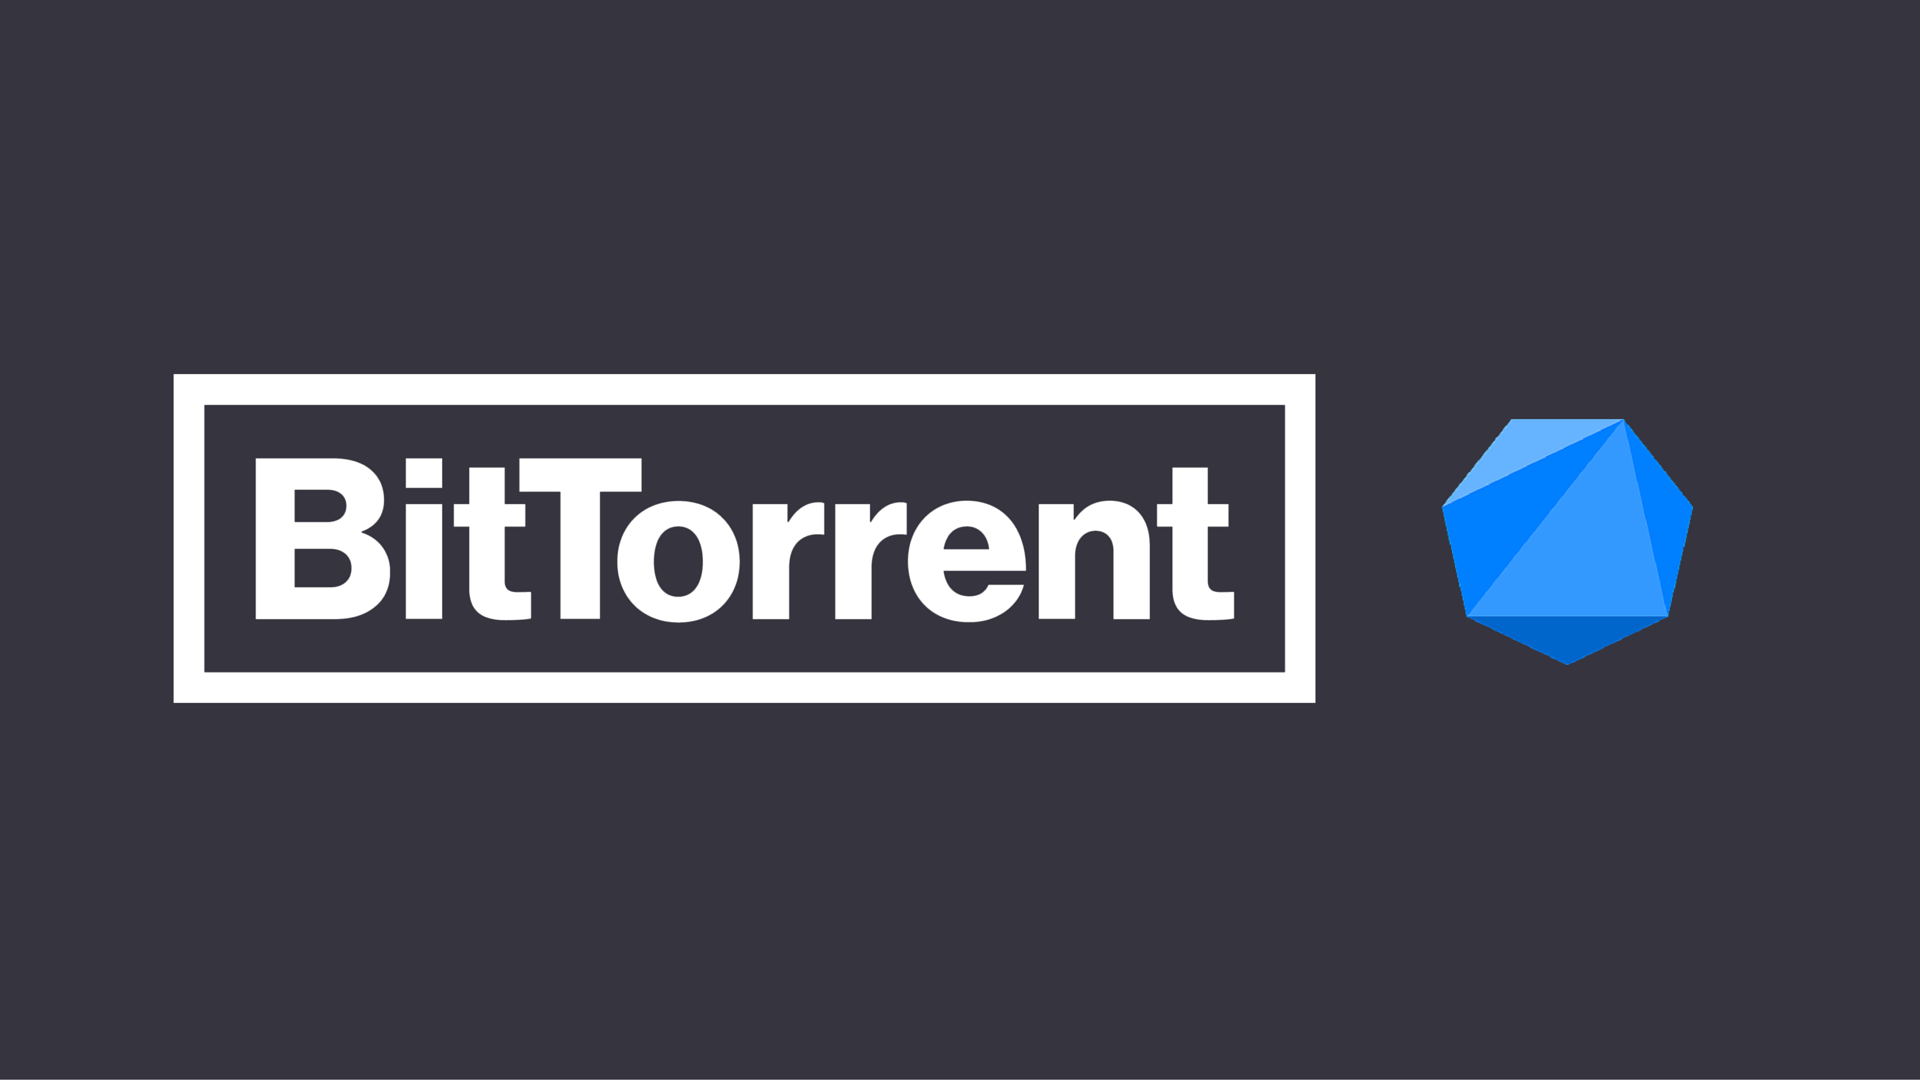 BitTorrent Now